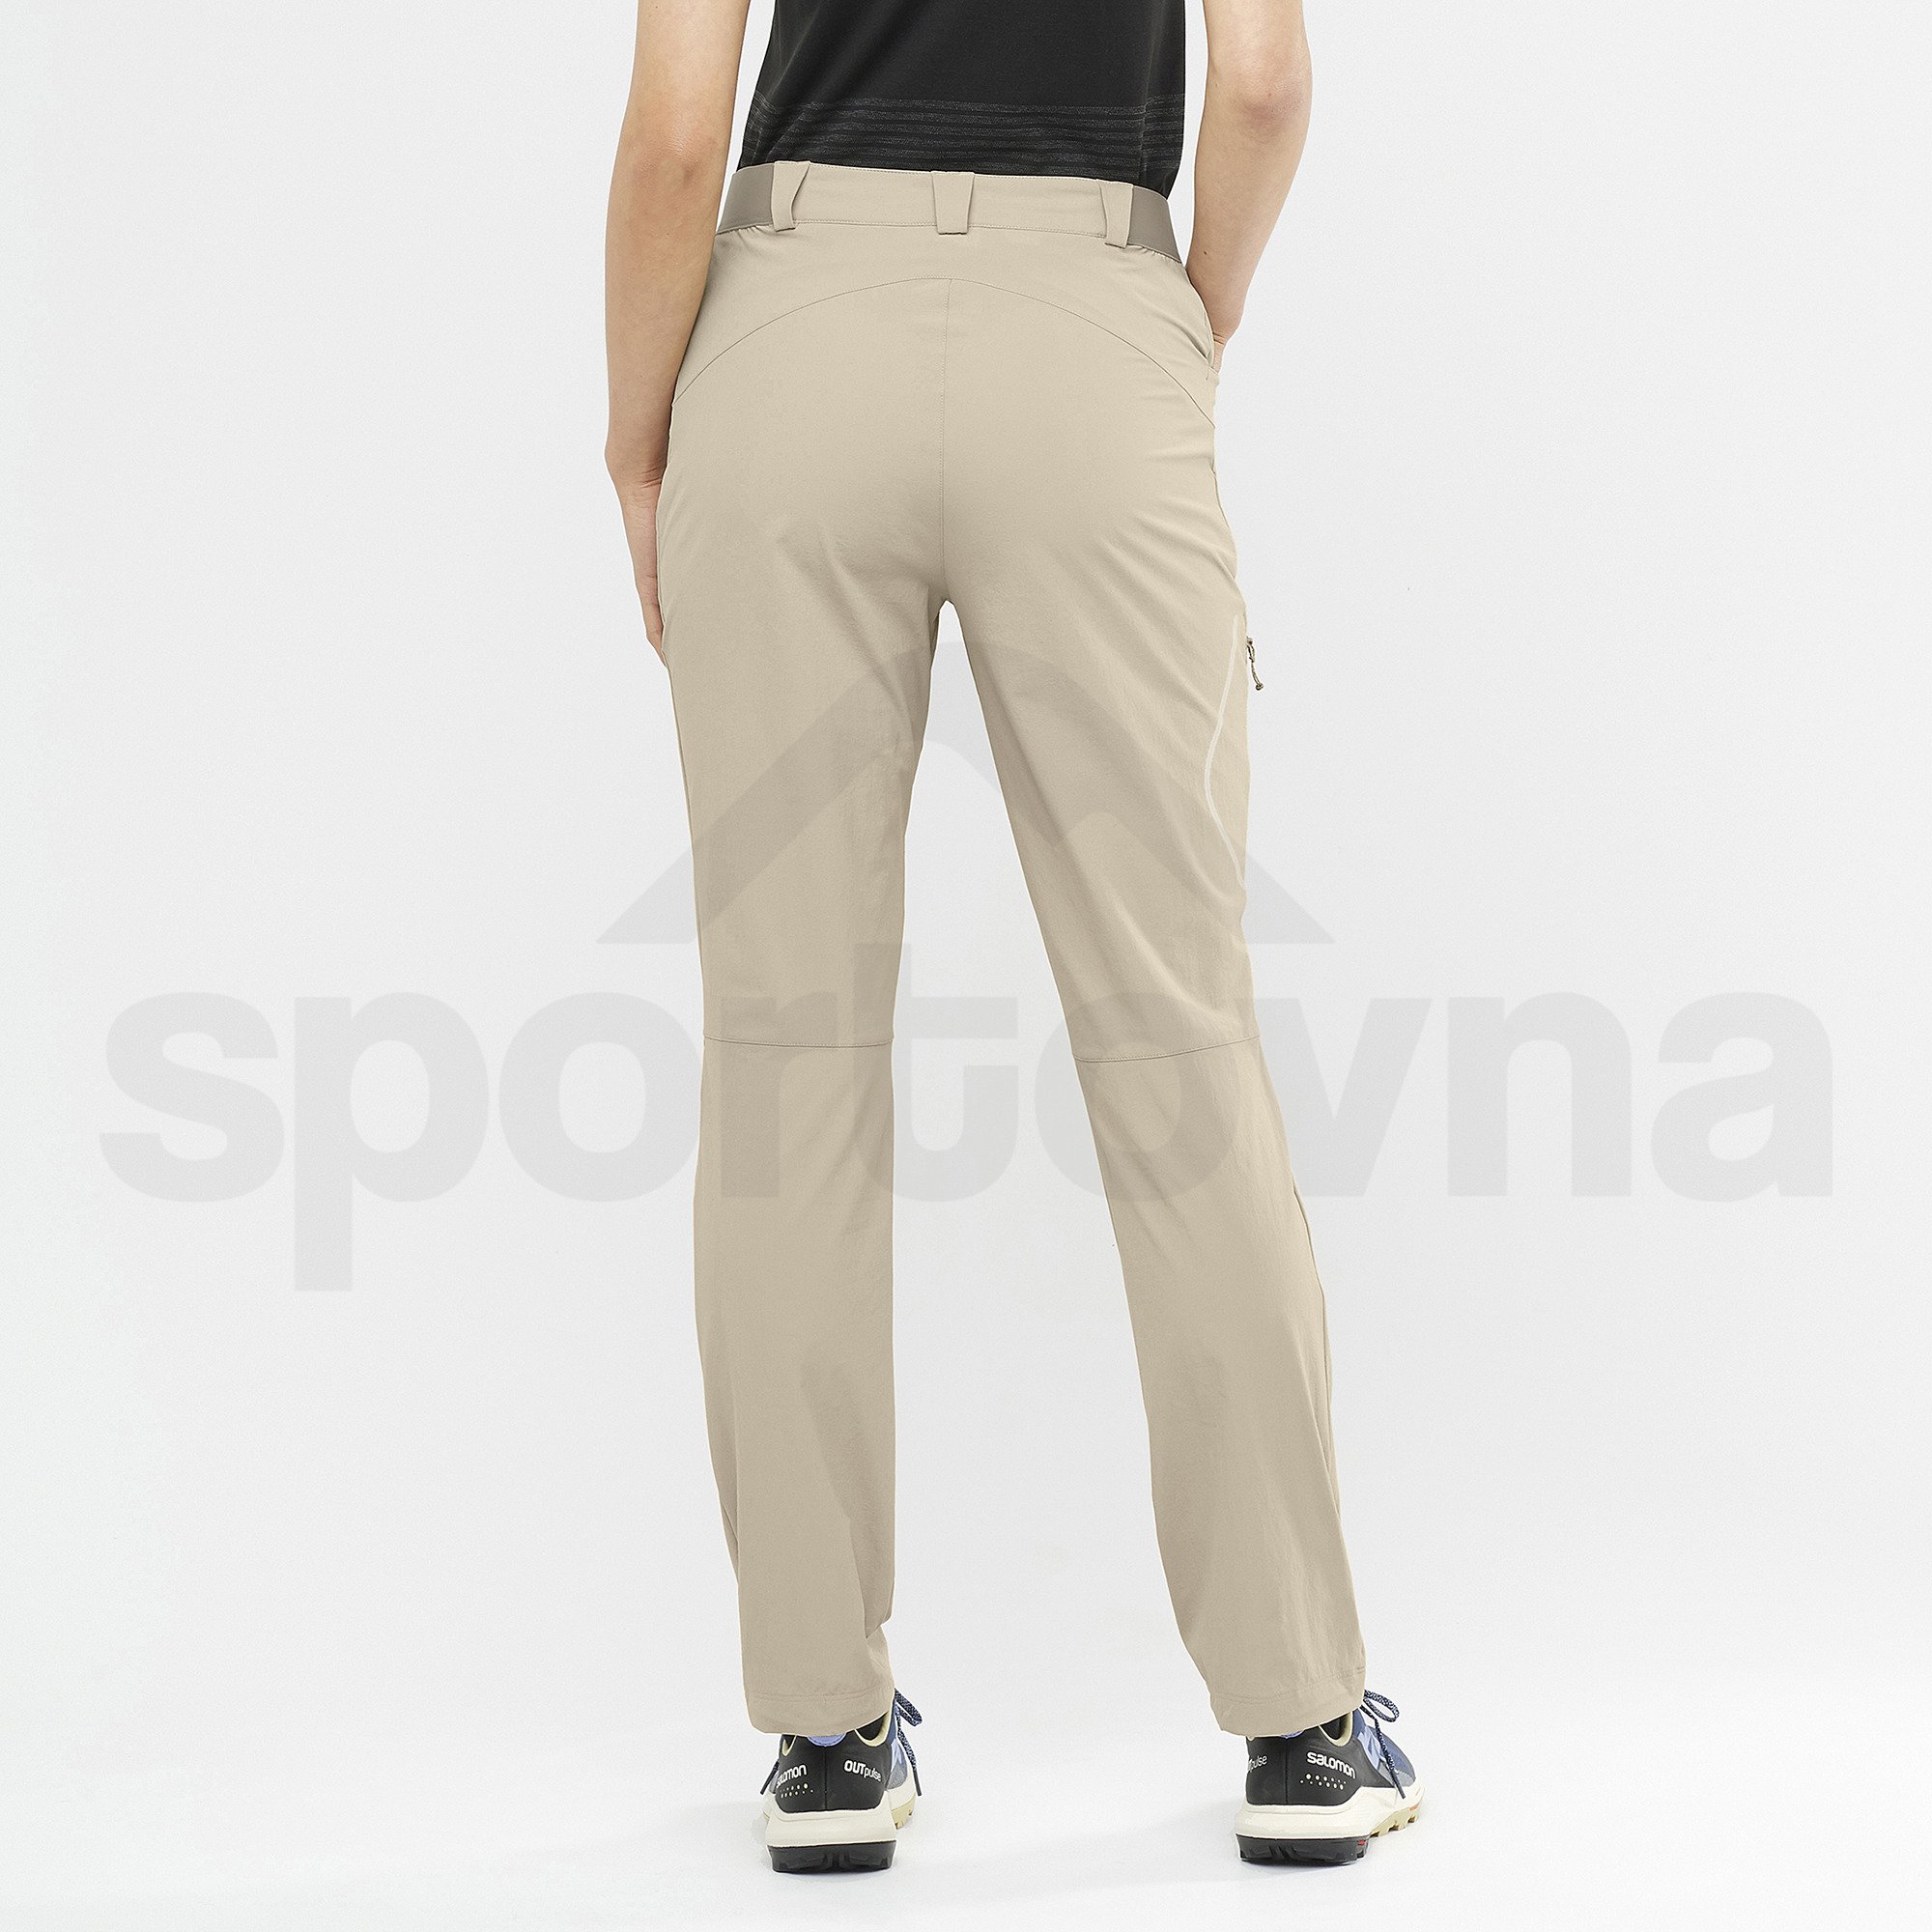 Kalhoty Salomon Wayfarer Pants W - hnědá (prodloužená délka)